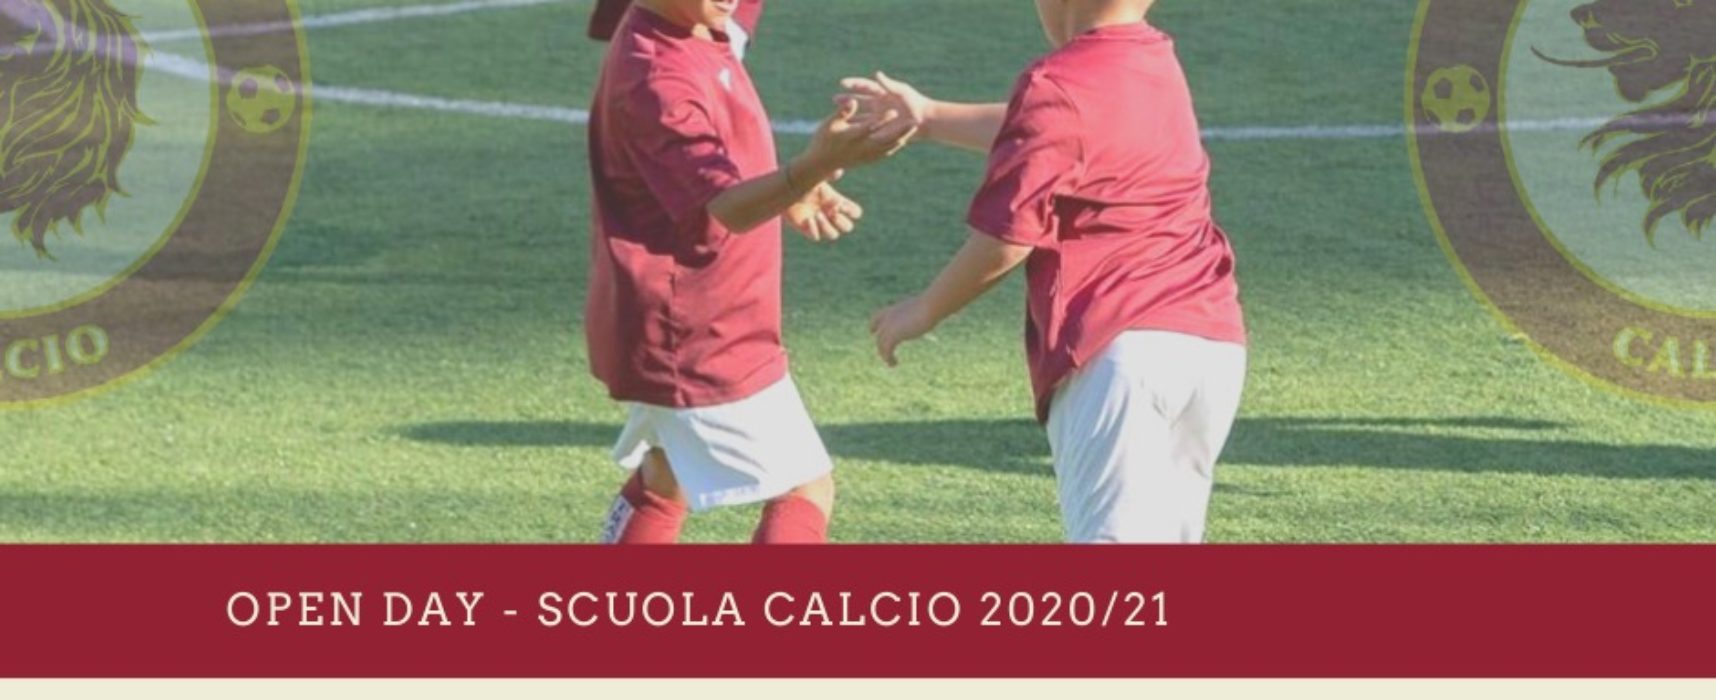 OPEN DAY SCUOLA CALCIO 2020/21